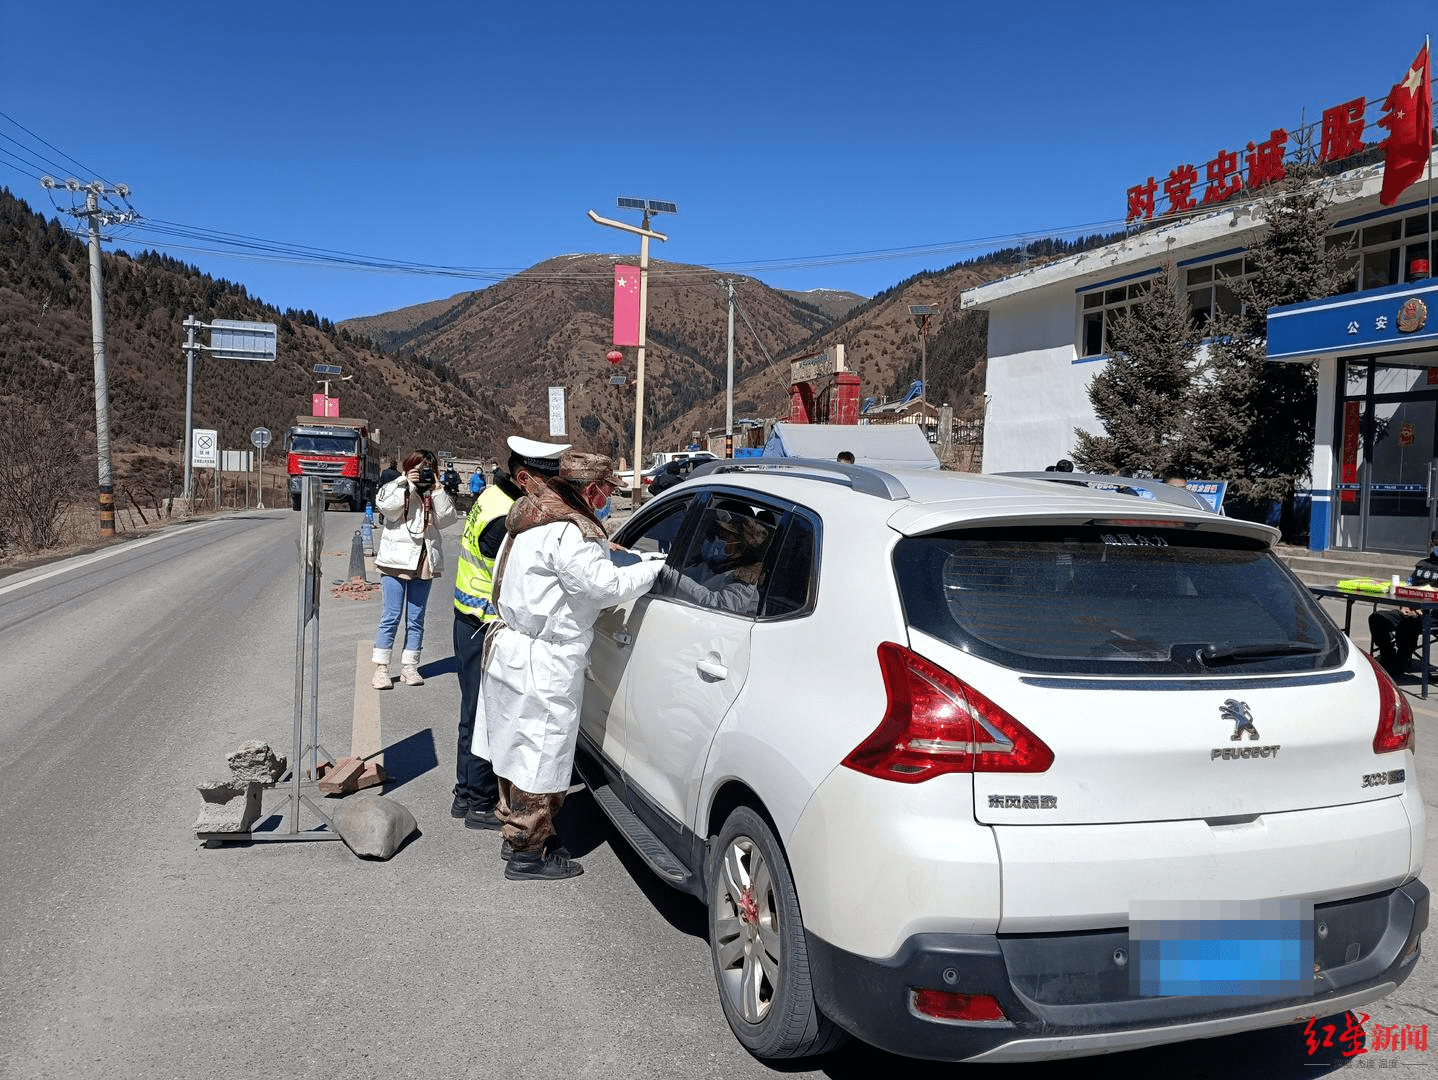 排查过往车辆检查健康码3月7日14时许,红星新闻记者来到红原县公安局